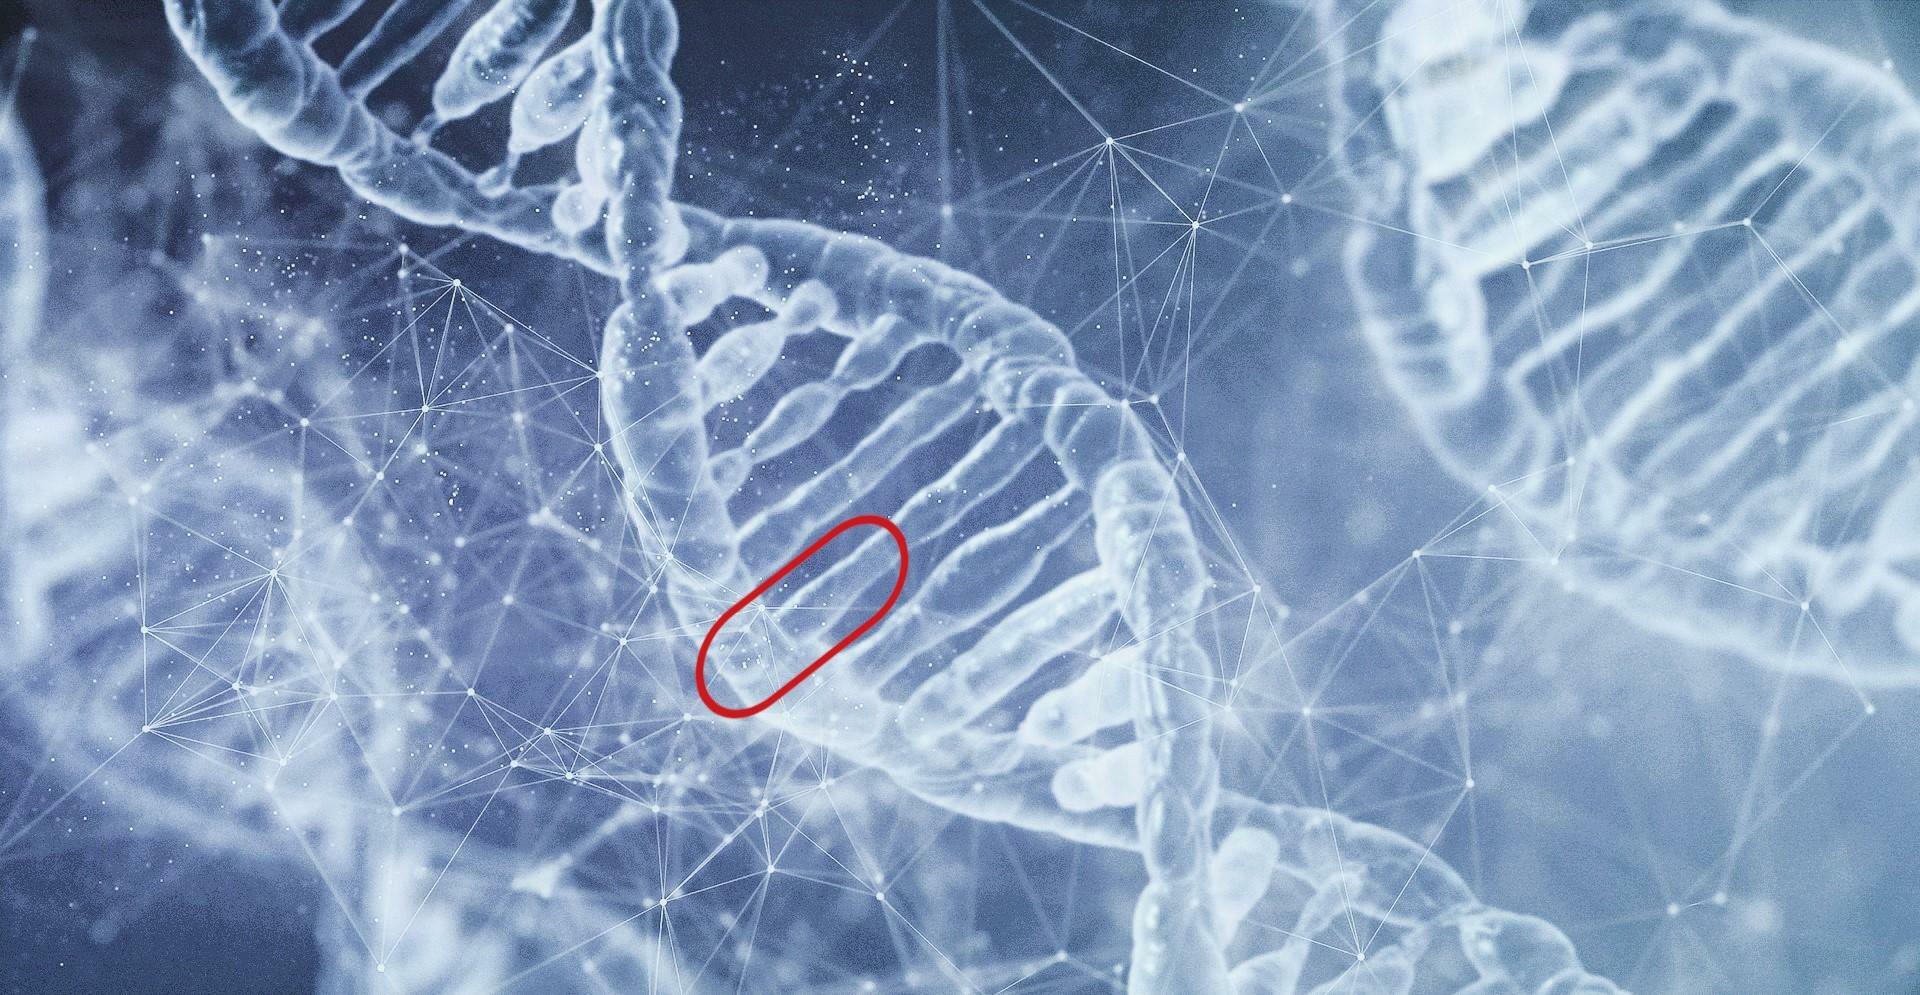 DNAのイメージ図。赤い印がA、T、G、Cの1文字分のDNAで、縦方向に長く繋がっている。隣には対応する形のDNAがくっついていて（AとT、CとGがくっつく）、二重螺旋構造をしている